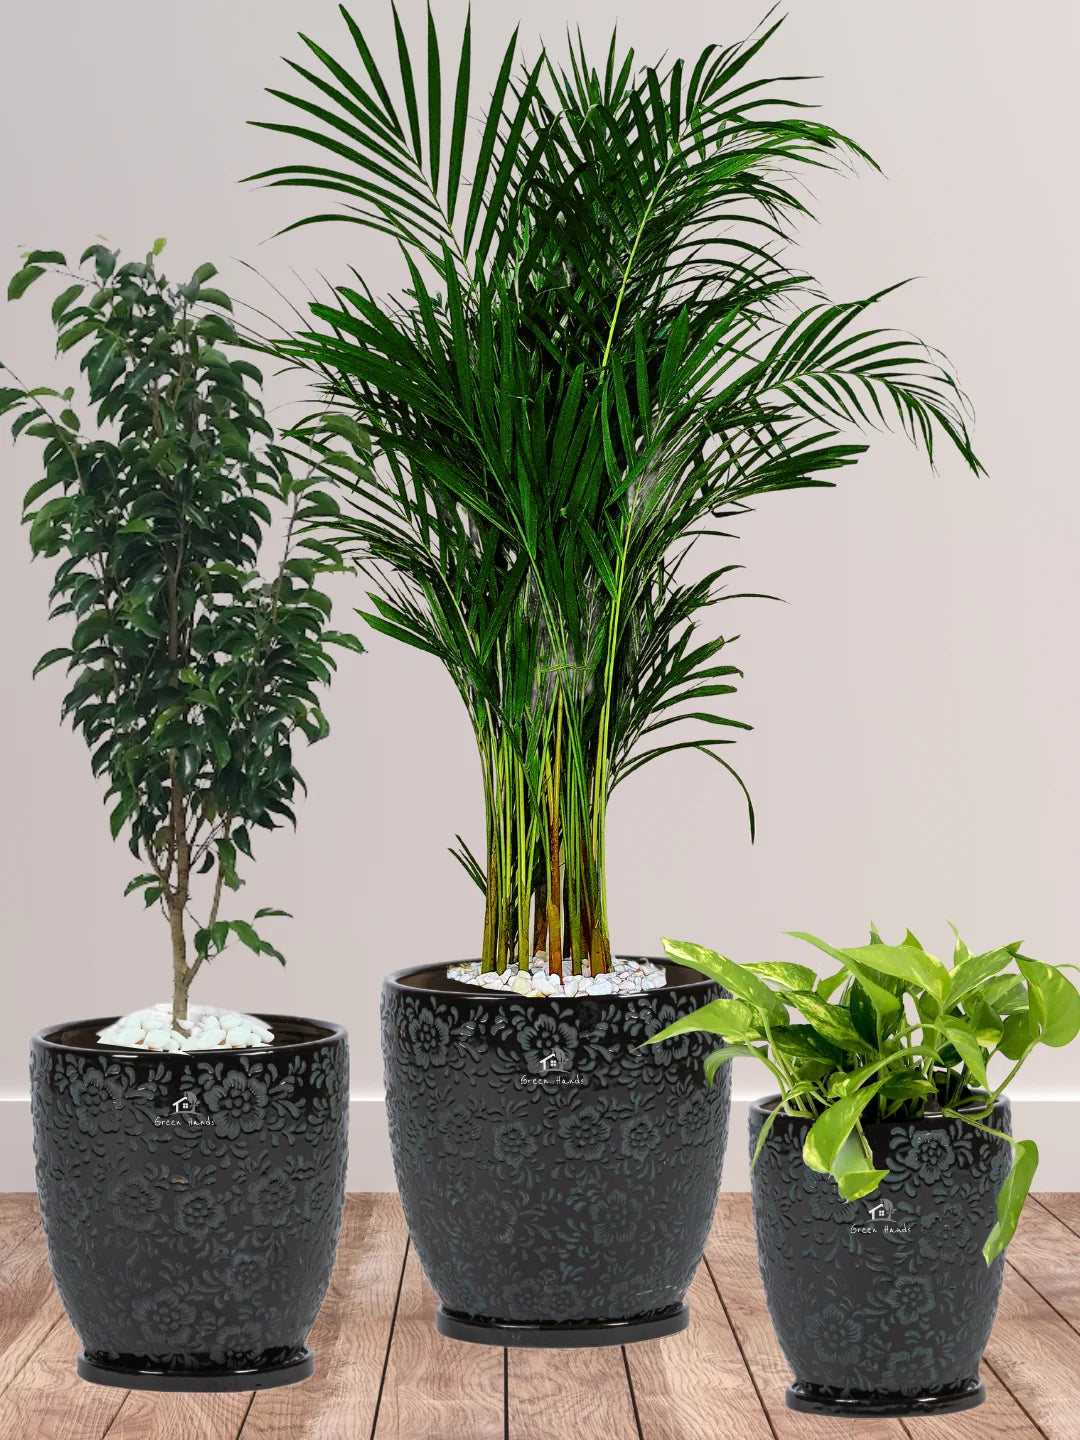 Potted Areca Palm, Benjamina, Money Plant | Three Plants Bundle in Premium Imari Black Floral Ceramic Pots